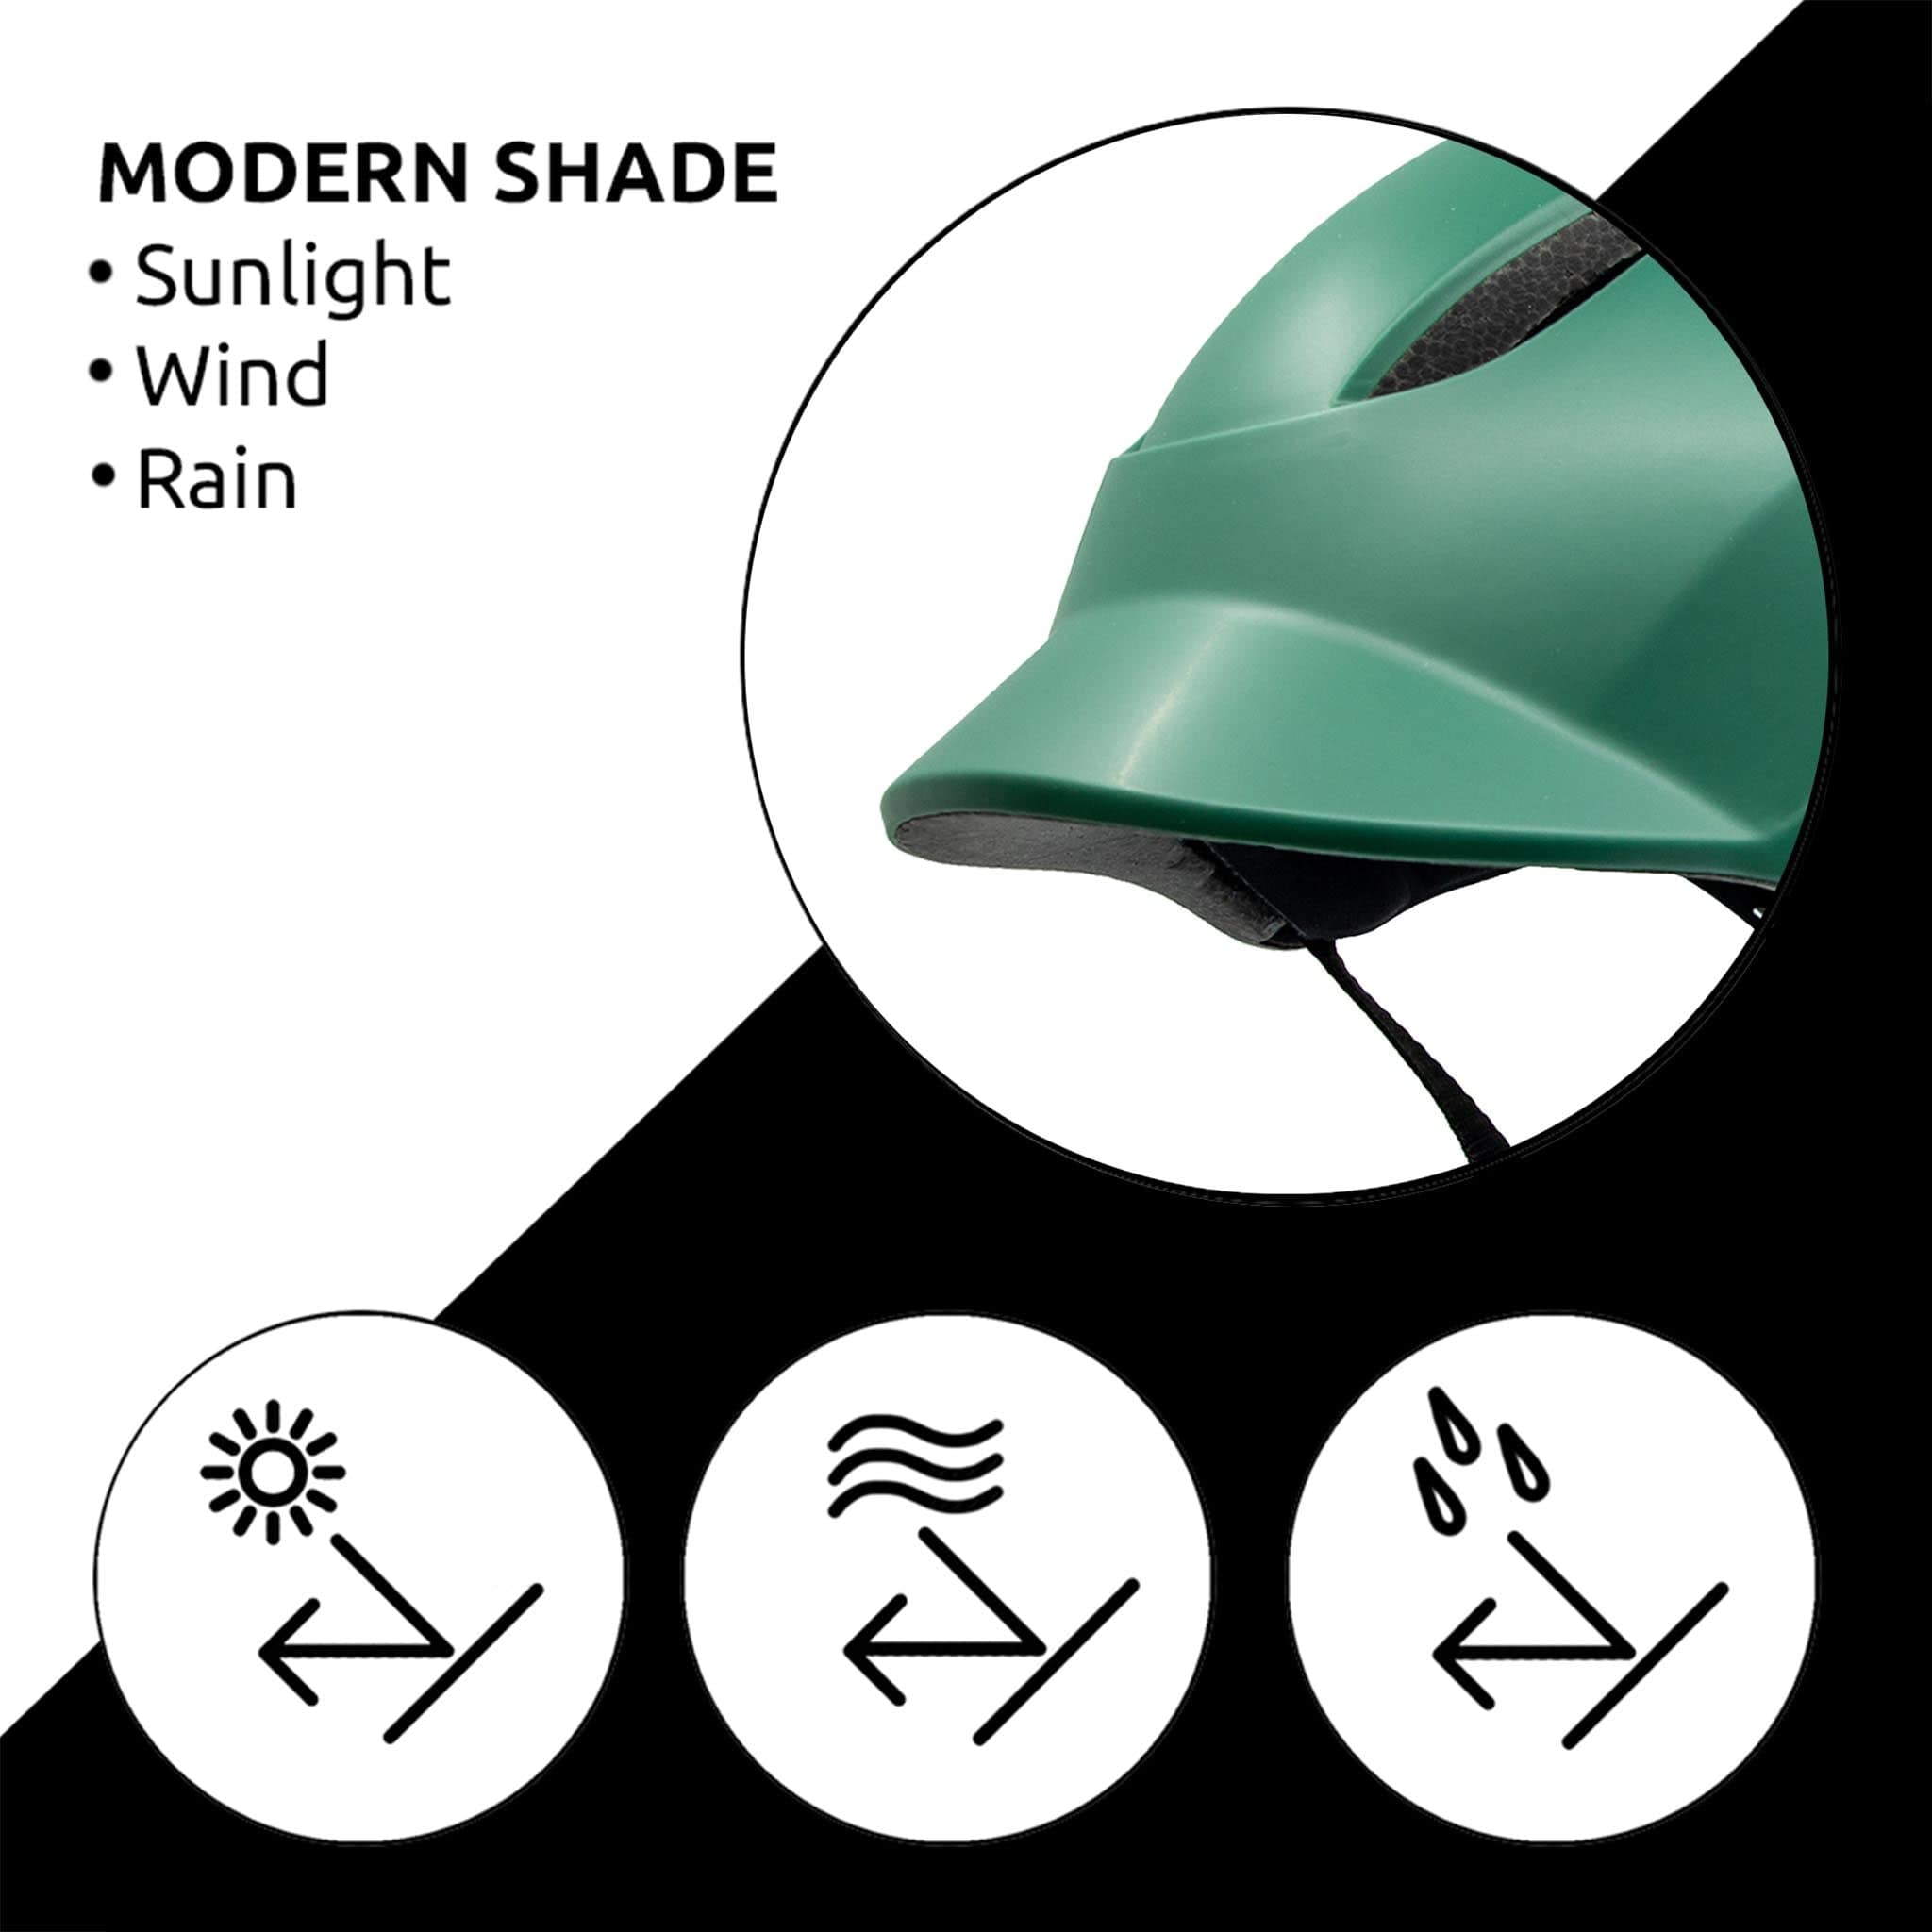 Green Aero Bike Helmet - modern shade